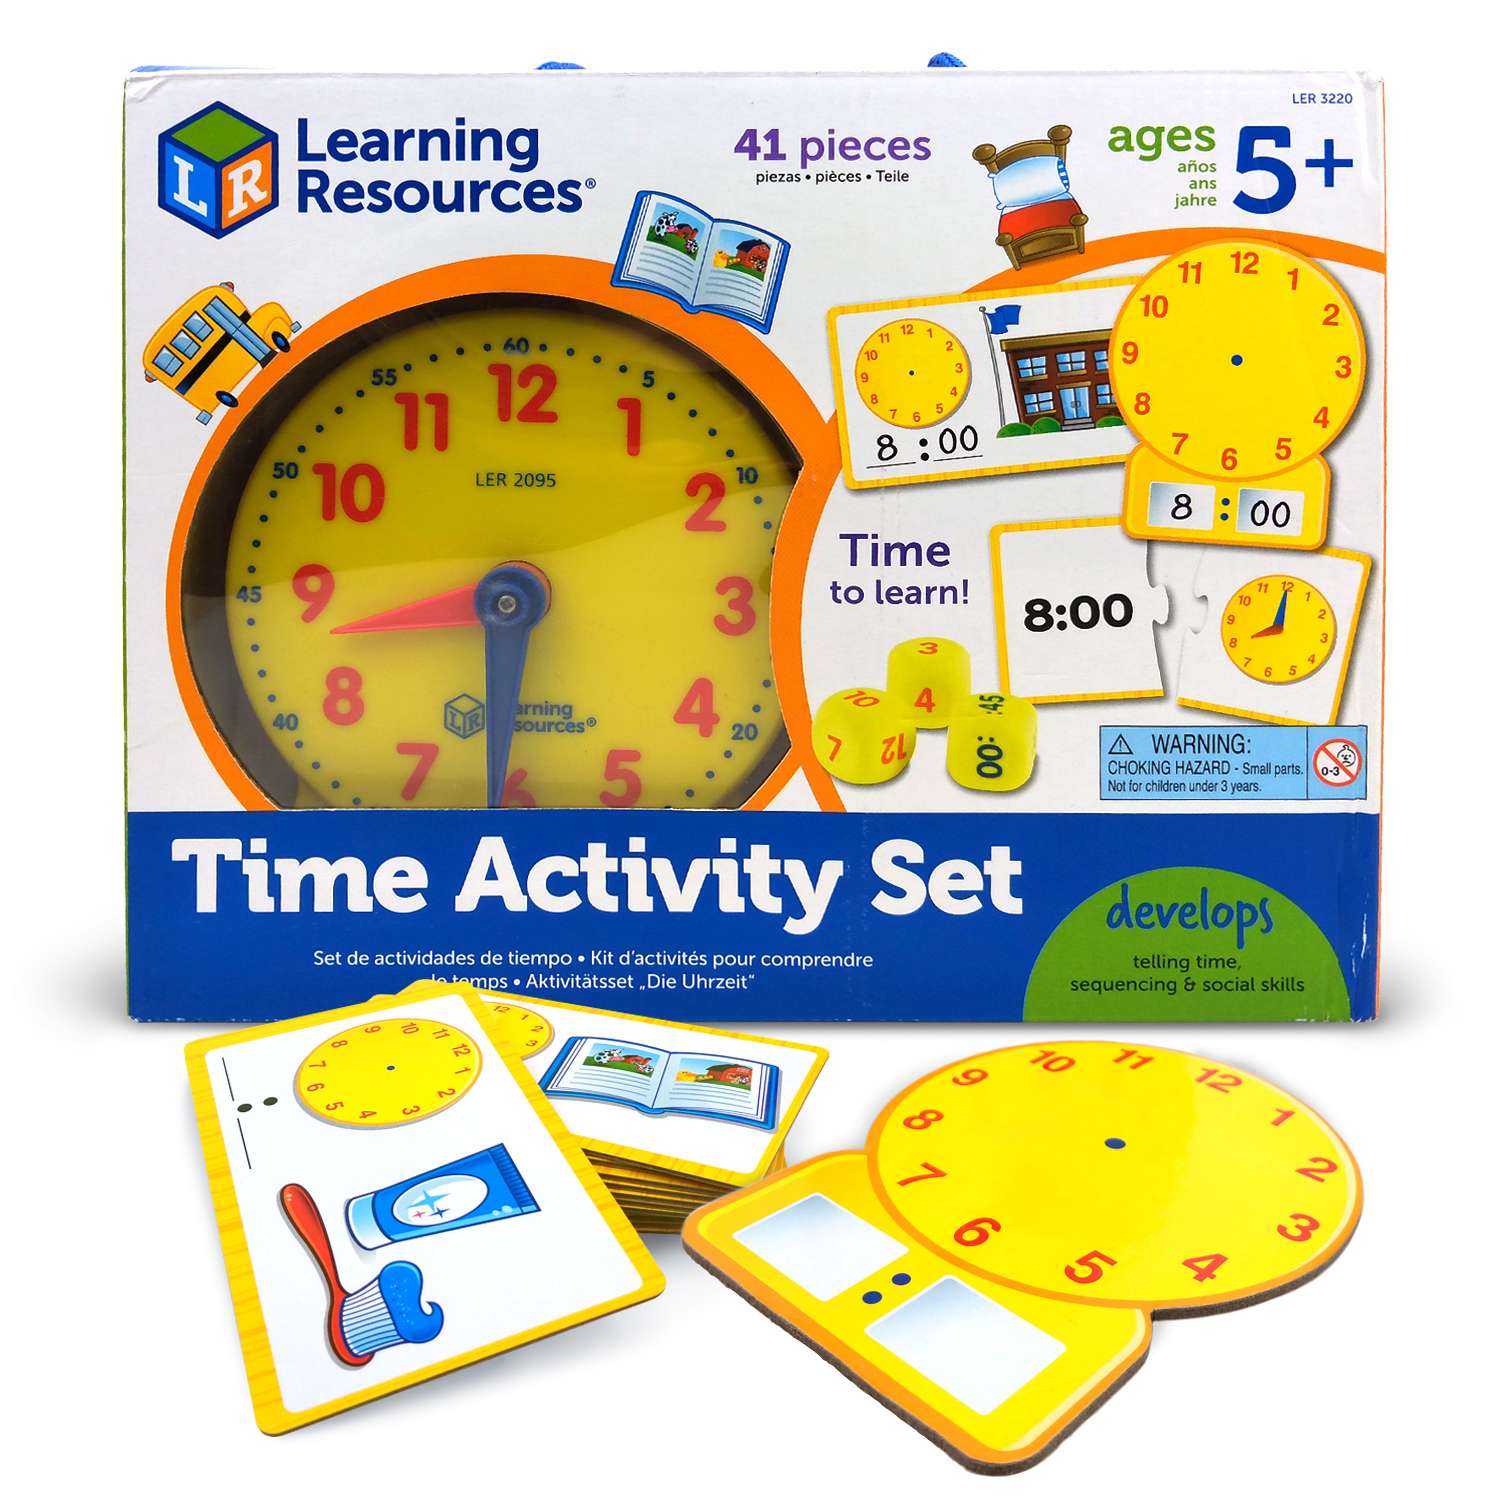 Ler3220 развивающая игрушка "Учимся определять время" (41 элемент). Учим часы игра. Набор время Learning resources. Часы Учимся определять время Learning resources, диаметр 30 см.